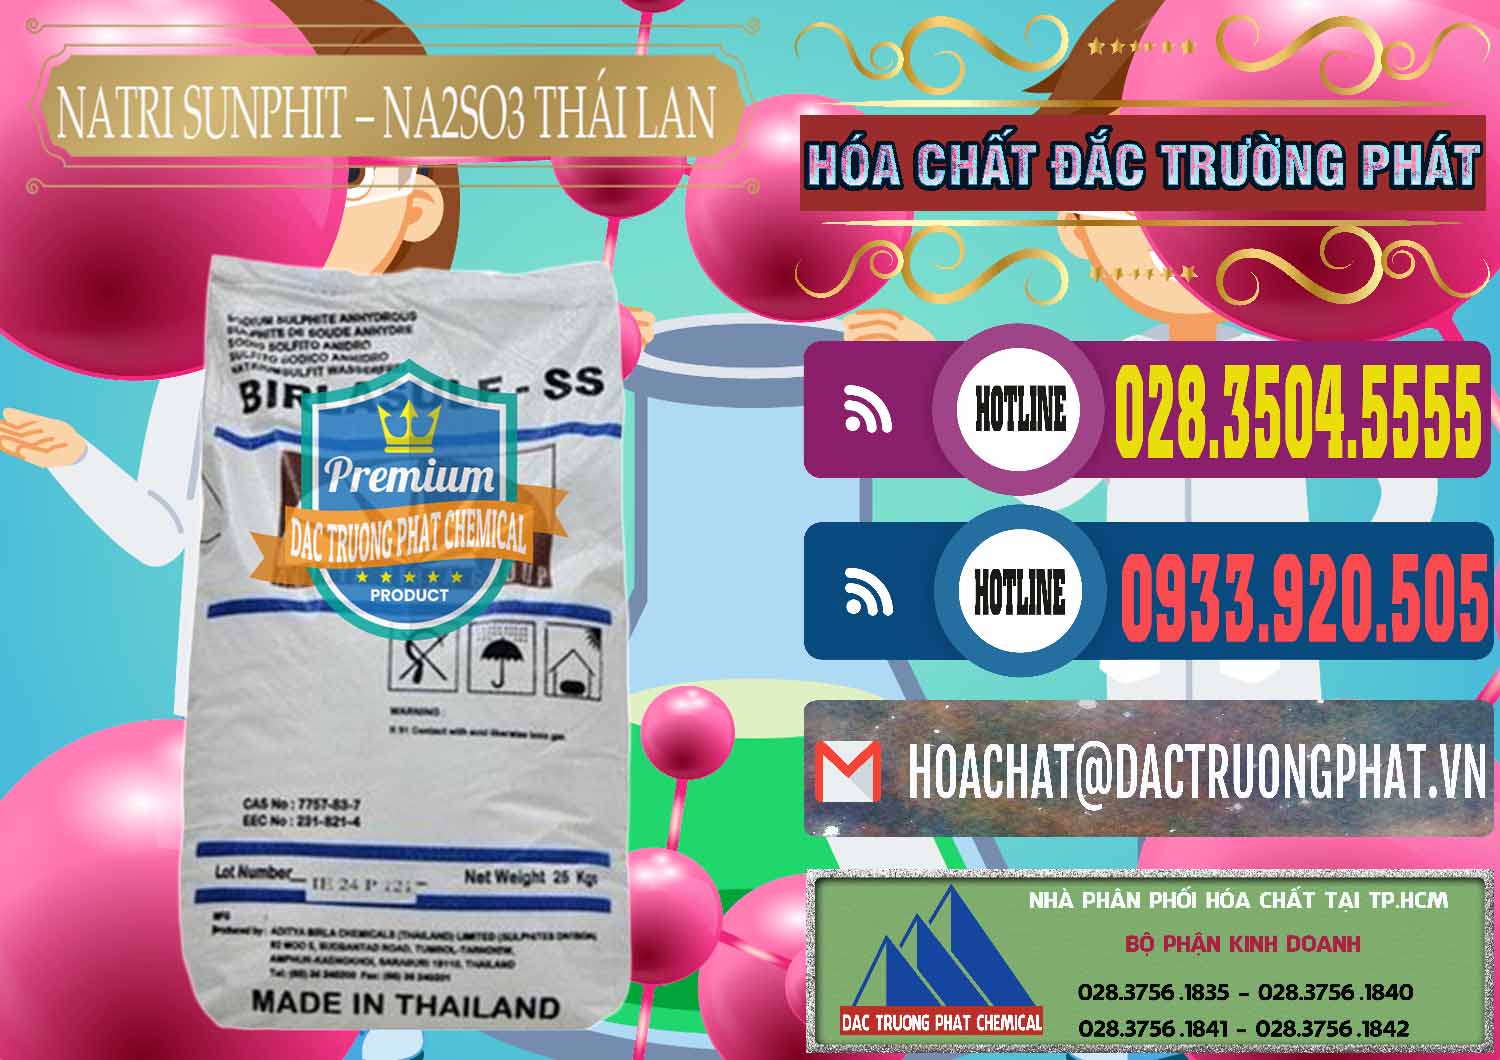 Đơn vị chuyên bán & phân phối Natri Sunphit - NA2SO3 Thái Lan - 0105 - Nơi cung cấp ( bán ) hóa chất tại TP.HCM - muabanhoachat.com.vn